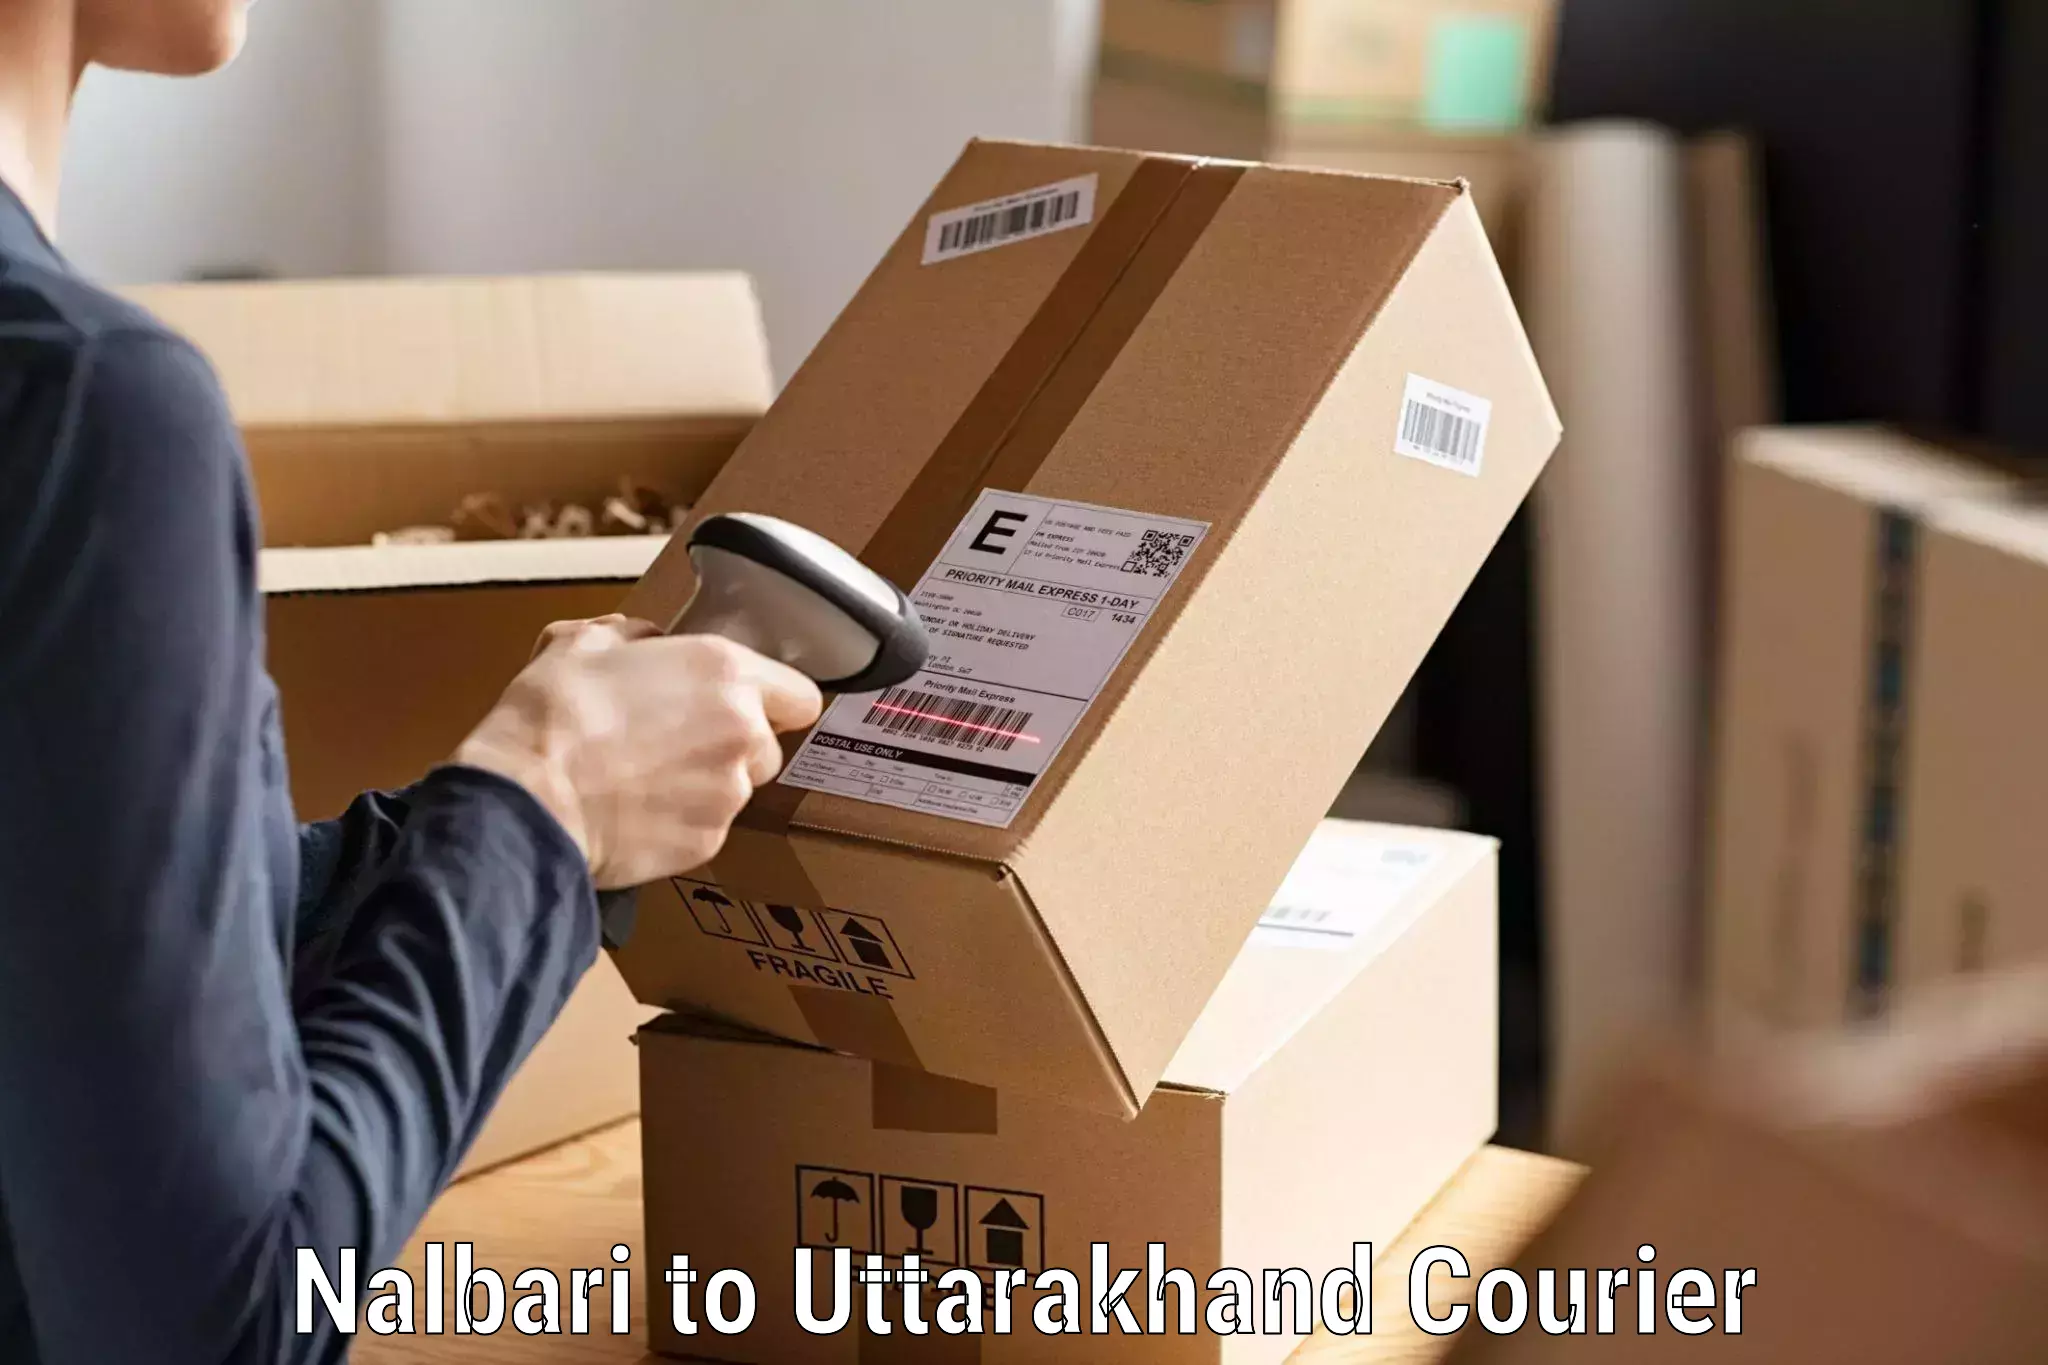 Nationwide courier service Nalbari to Uttarakhand